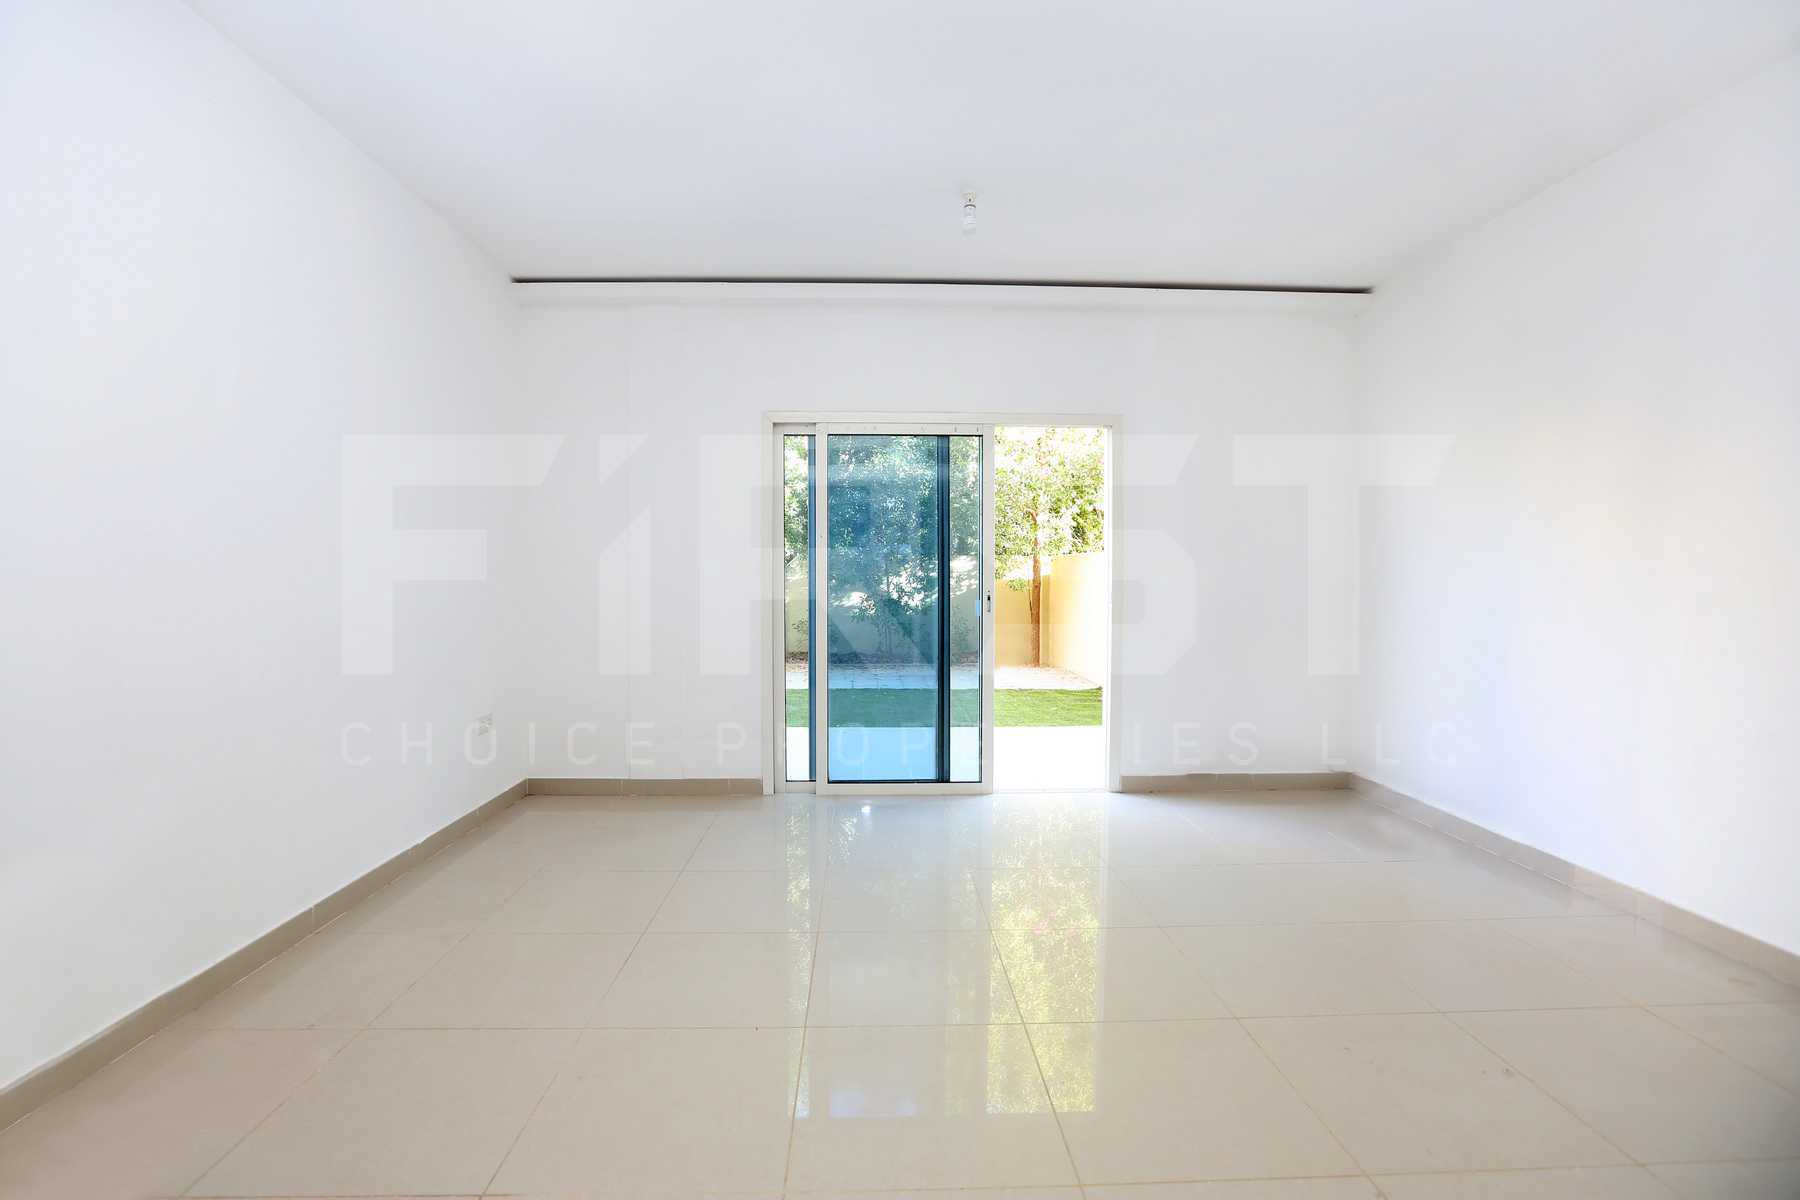 Internal Photo of 2 Bedroom Villa in Al Reef Villas  Al Reef Abu Dhabi UAE 170.2 sq.m 1832 sq.ft (6).jpg